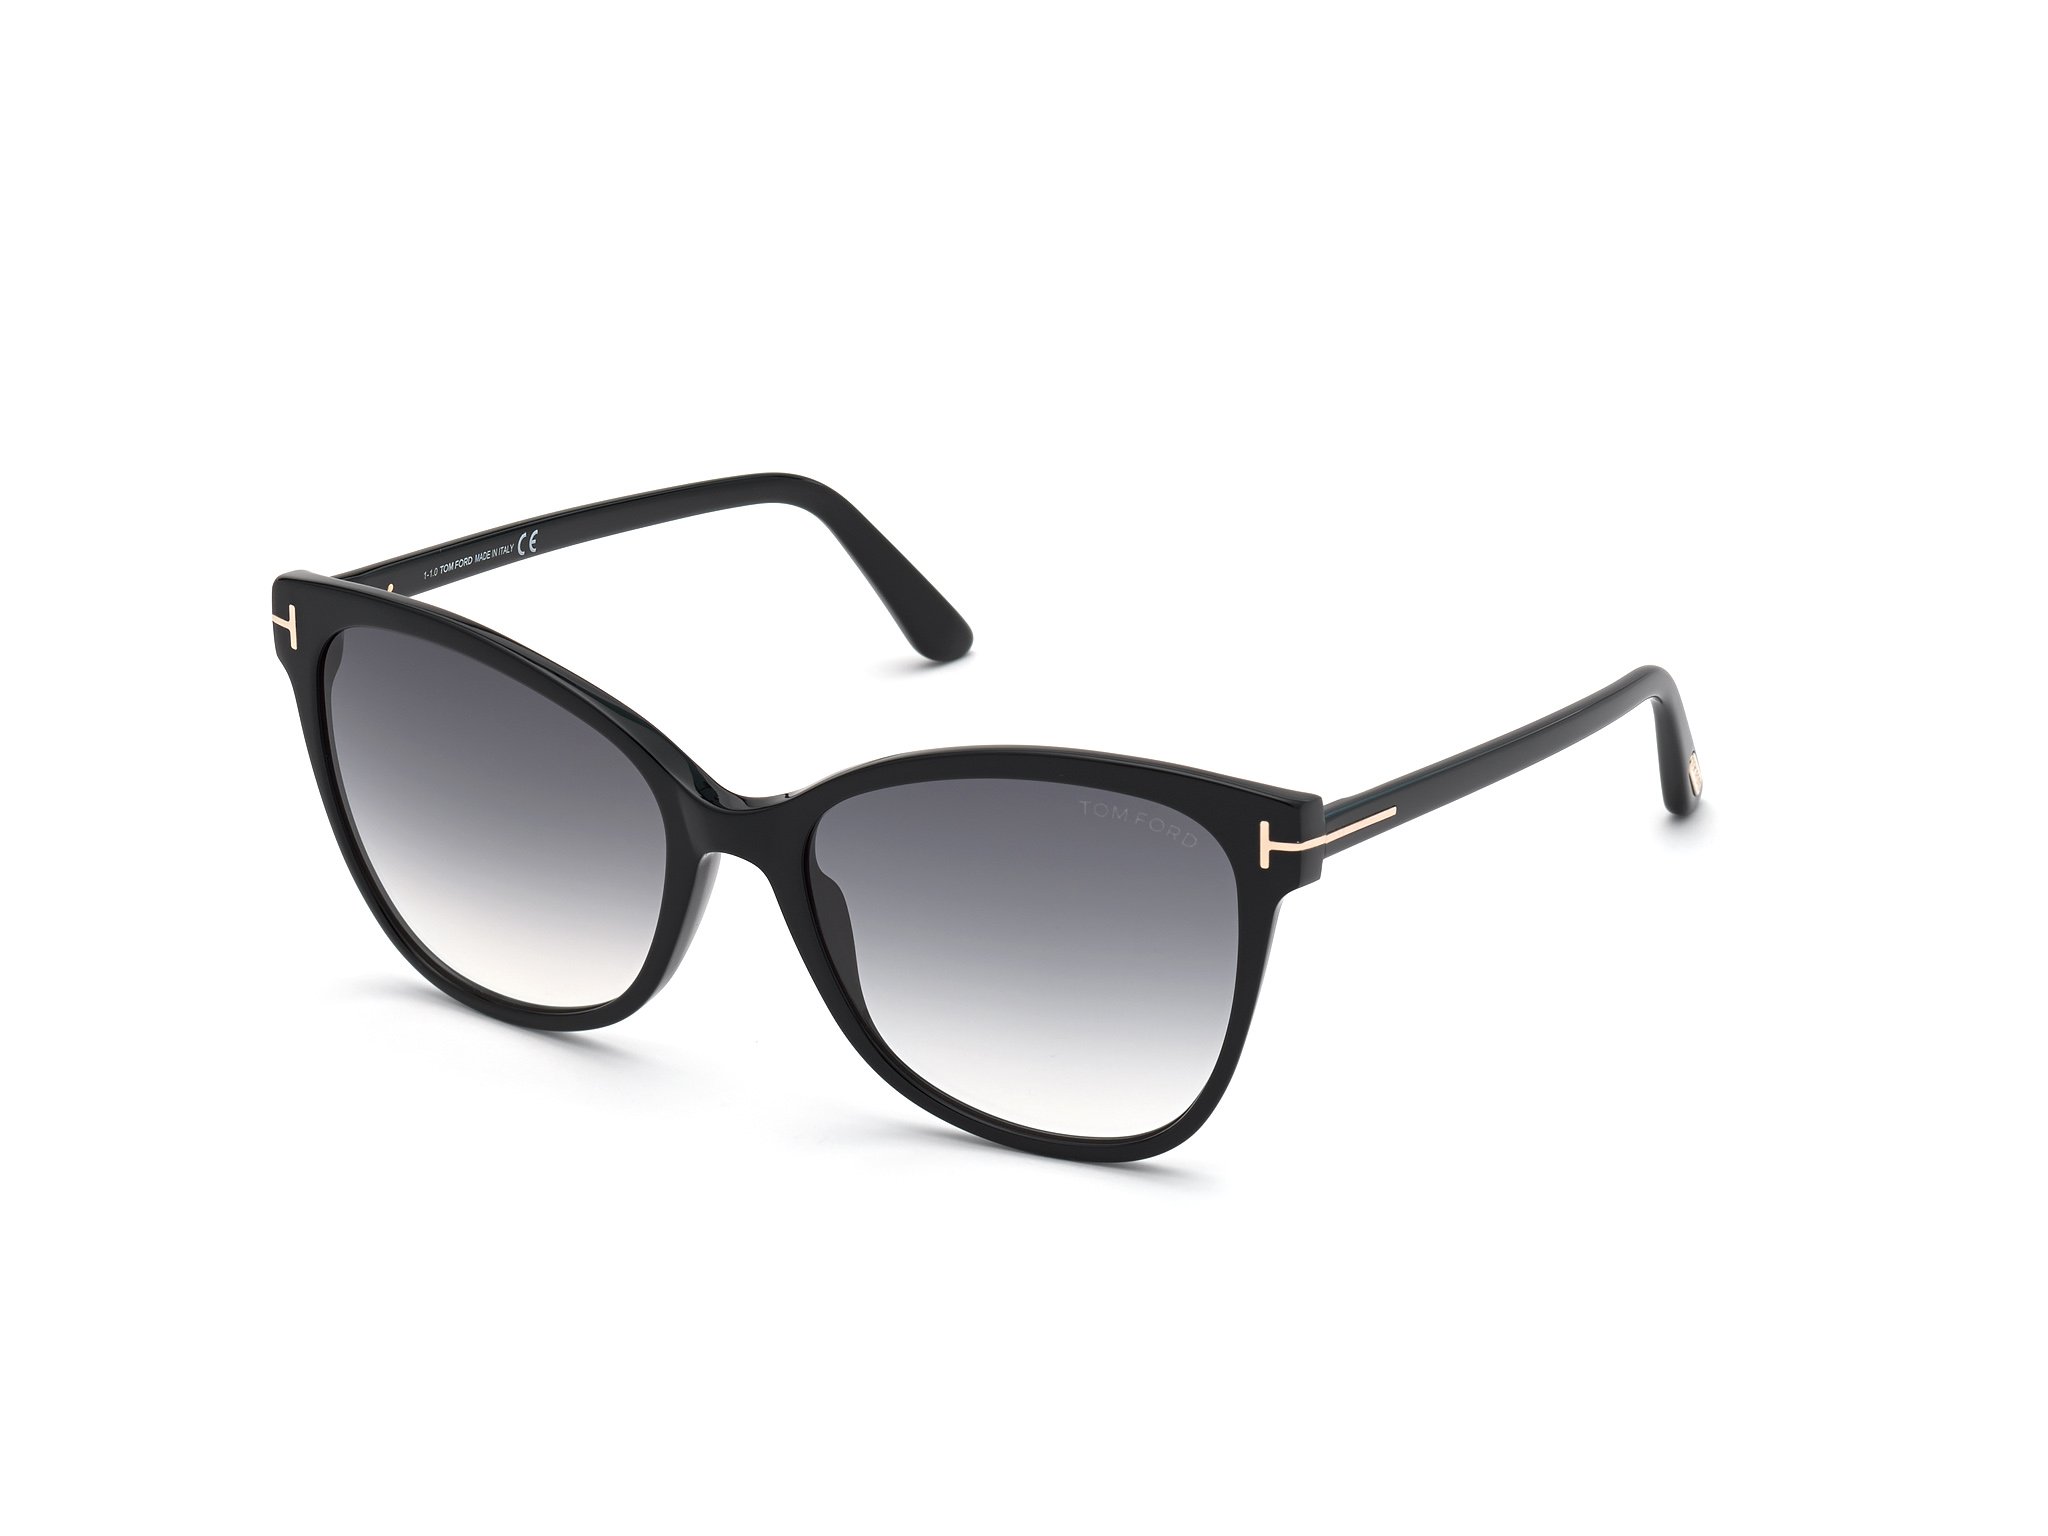 Das Bild zeigt die Sonnenbrille ANI FT0844 von der Marke Tom Ford in schwarz